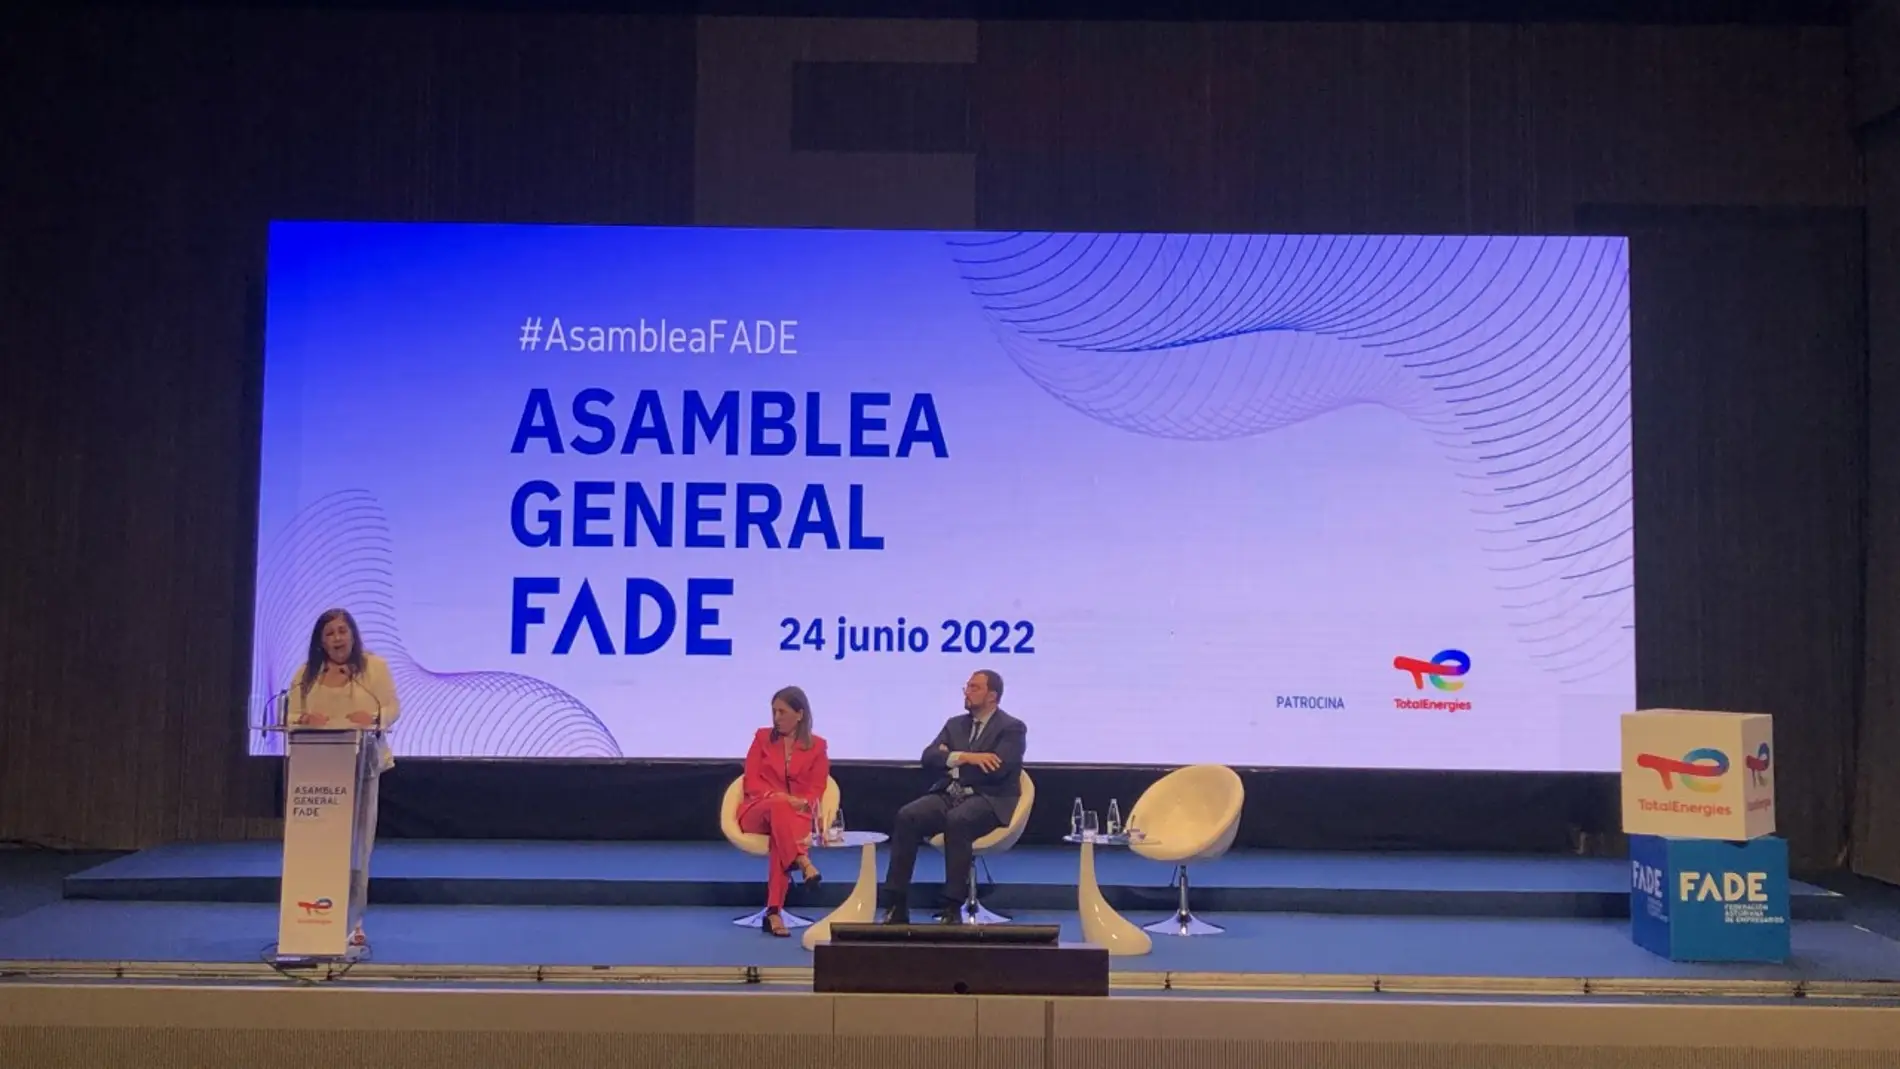 Asamblea general de FADE